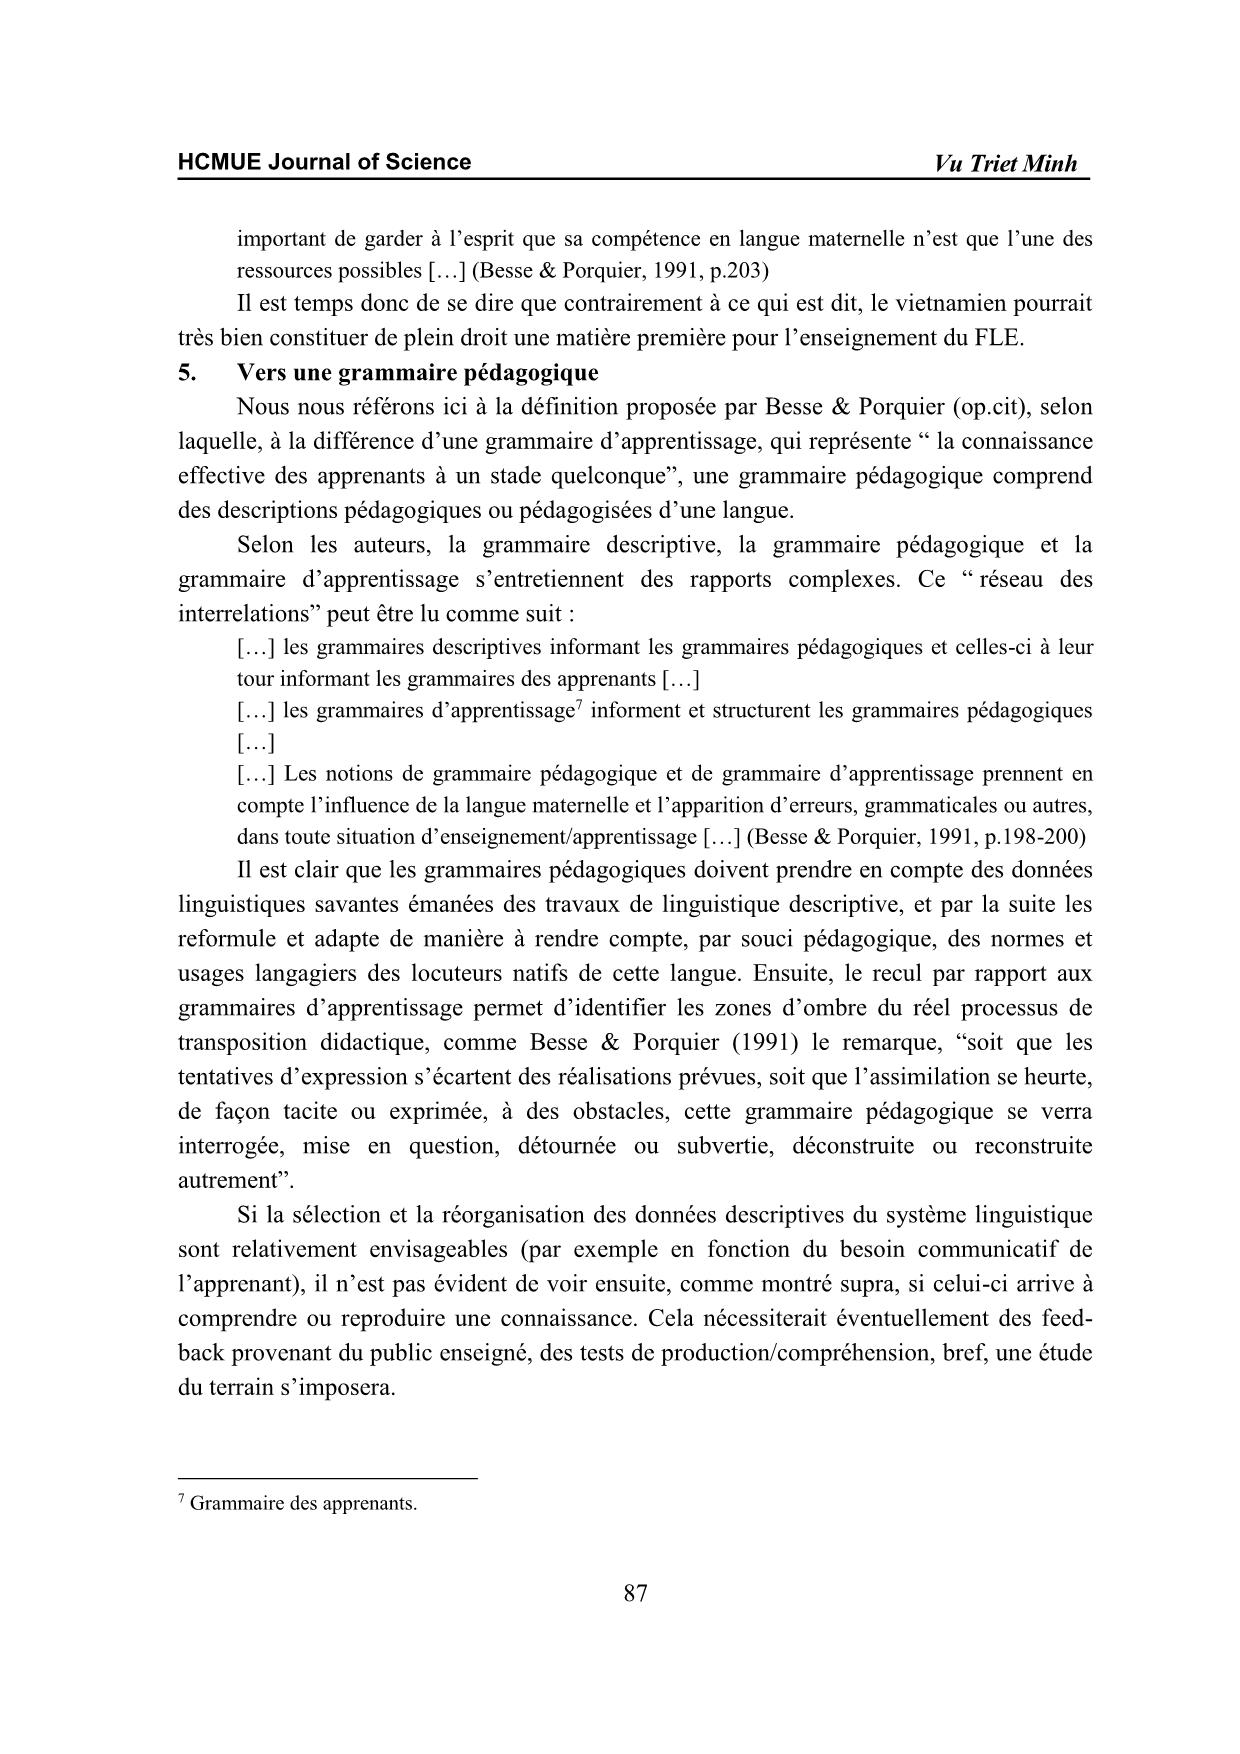 Vers une grammaire contrastive des temps verbaux pour les apprenants Vietnamiens du Français Langue Étrangère (FLE) trang 5